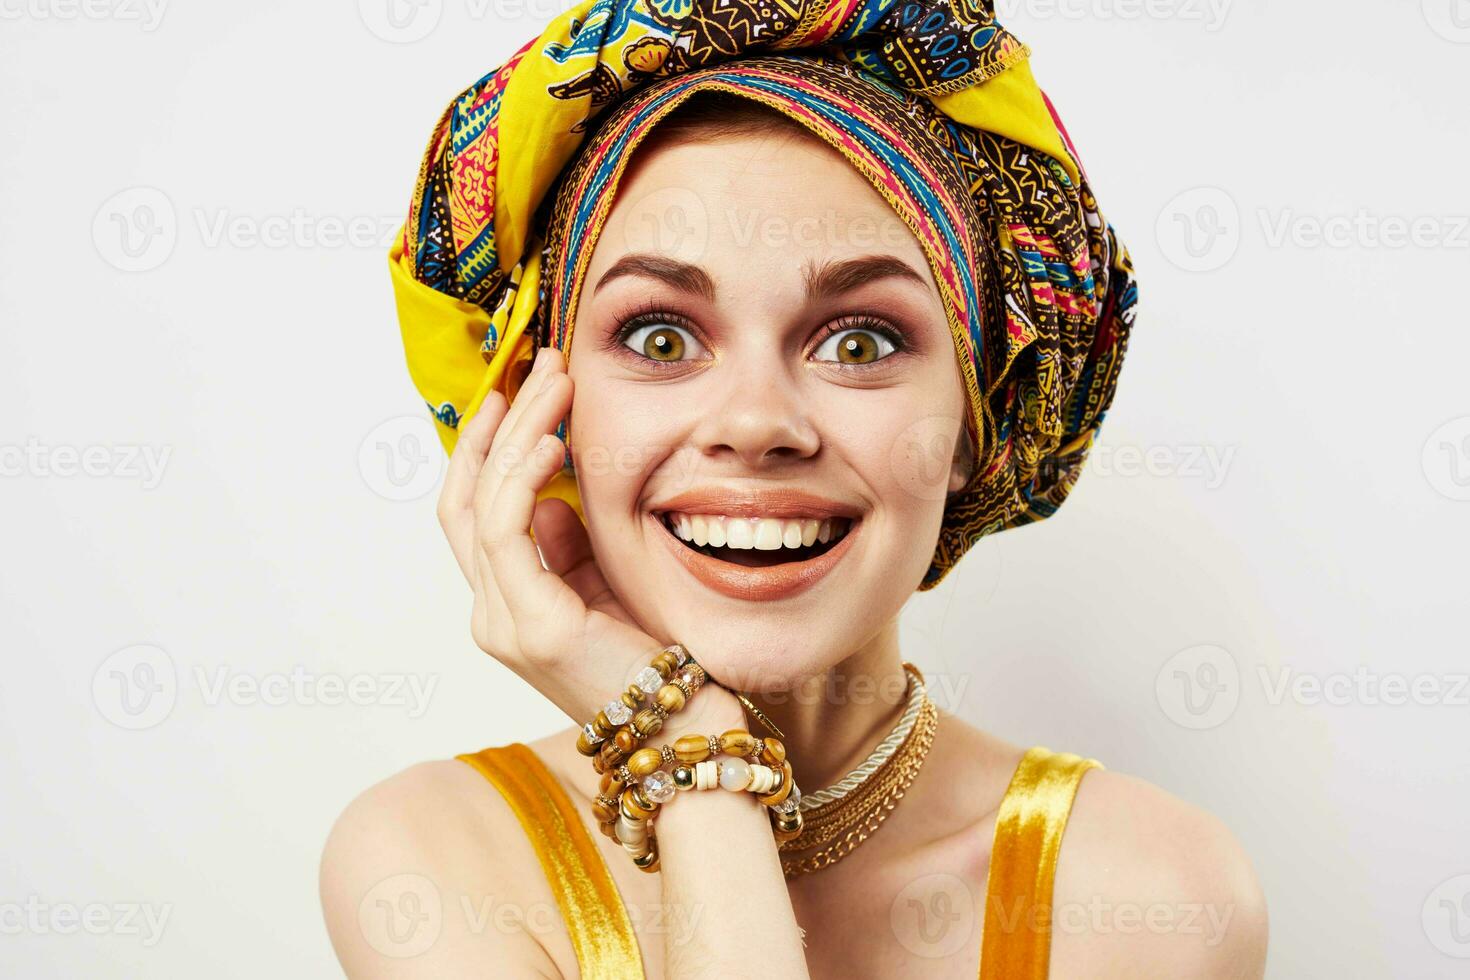 joyeux femme multicolore turbans Accueil décoration mode photo